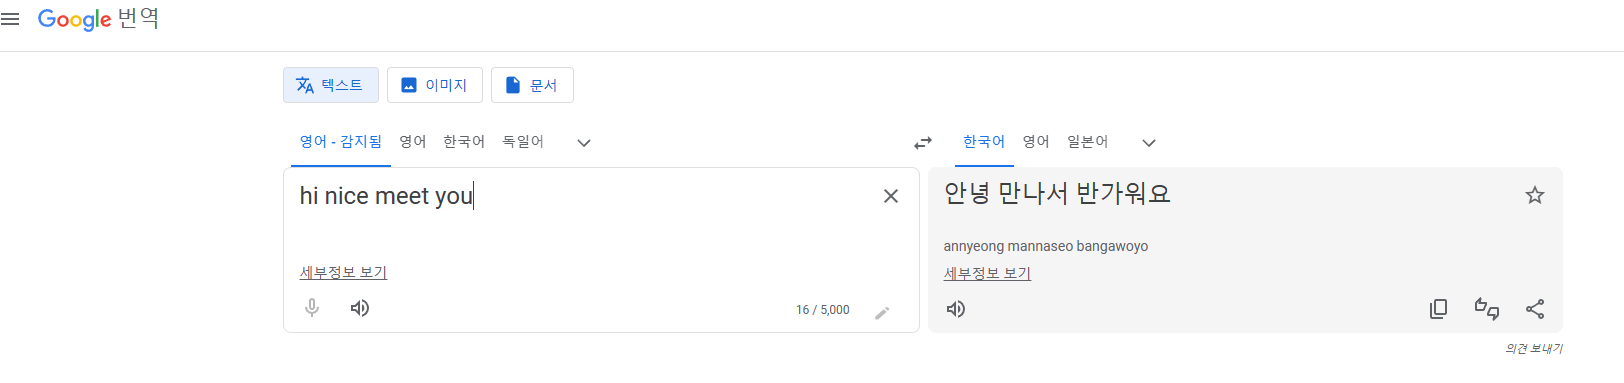 구글 번역기 바로가기 ㅣ이미지 번역 ㅣ문서 번역 translate.google.co.kr